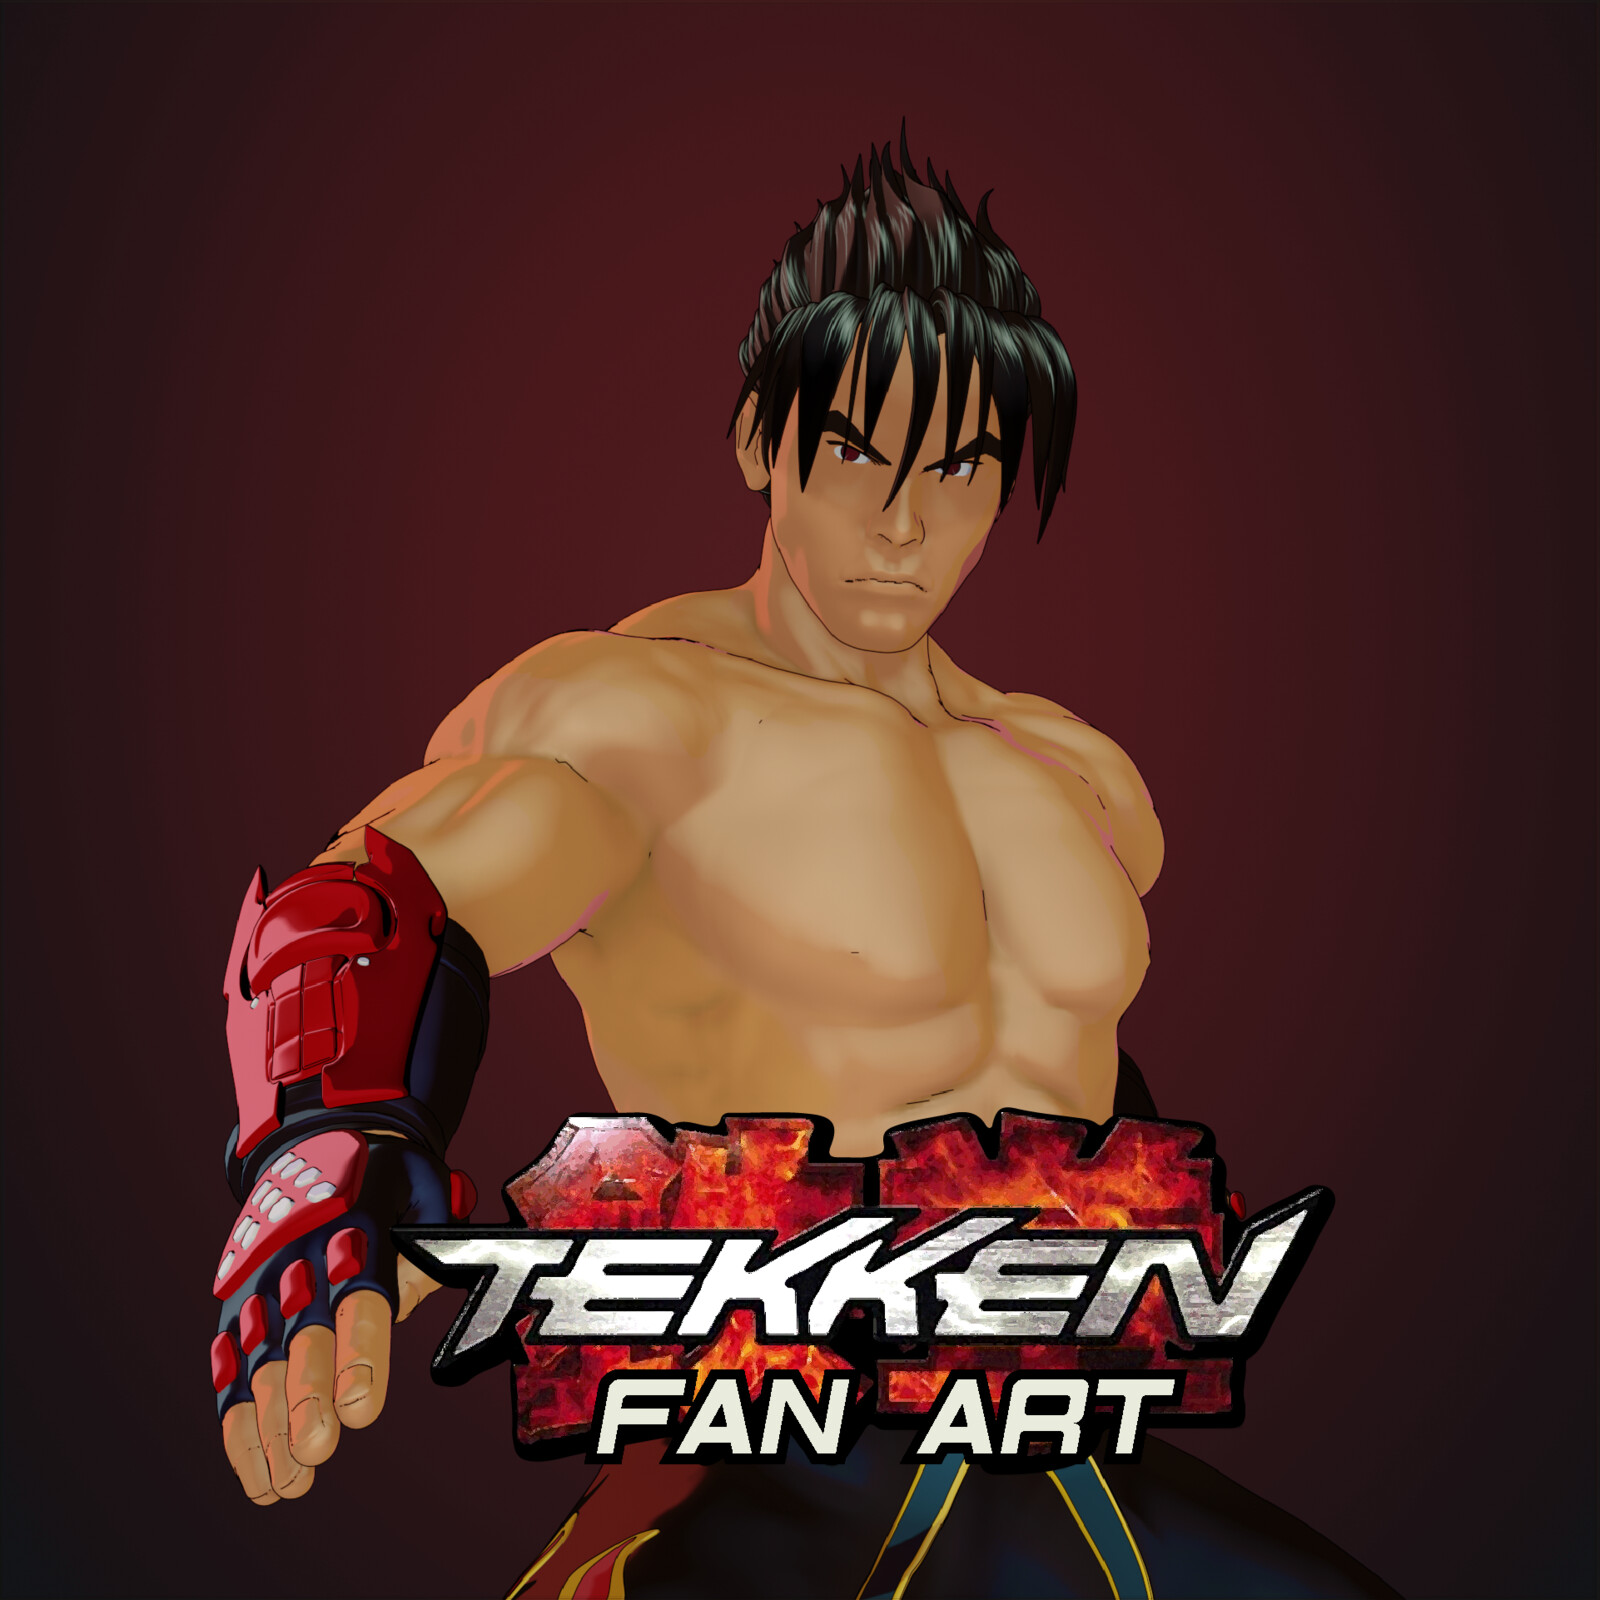 Jin Kazama - Tekken